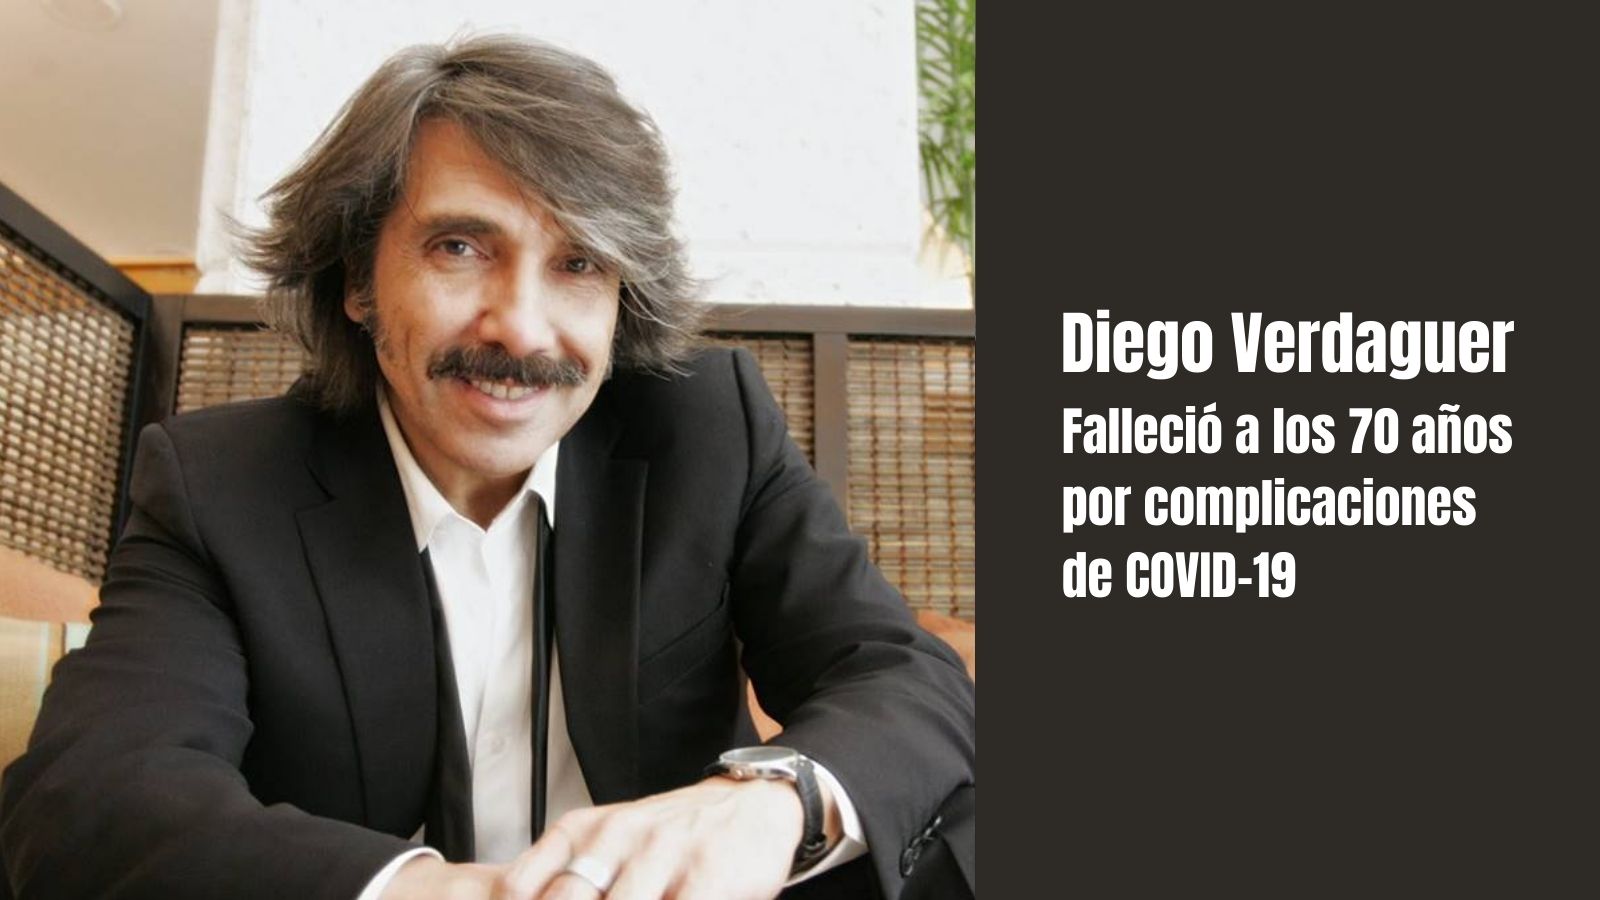 Diego Verdaguer